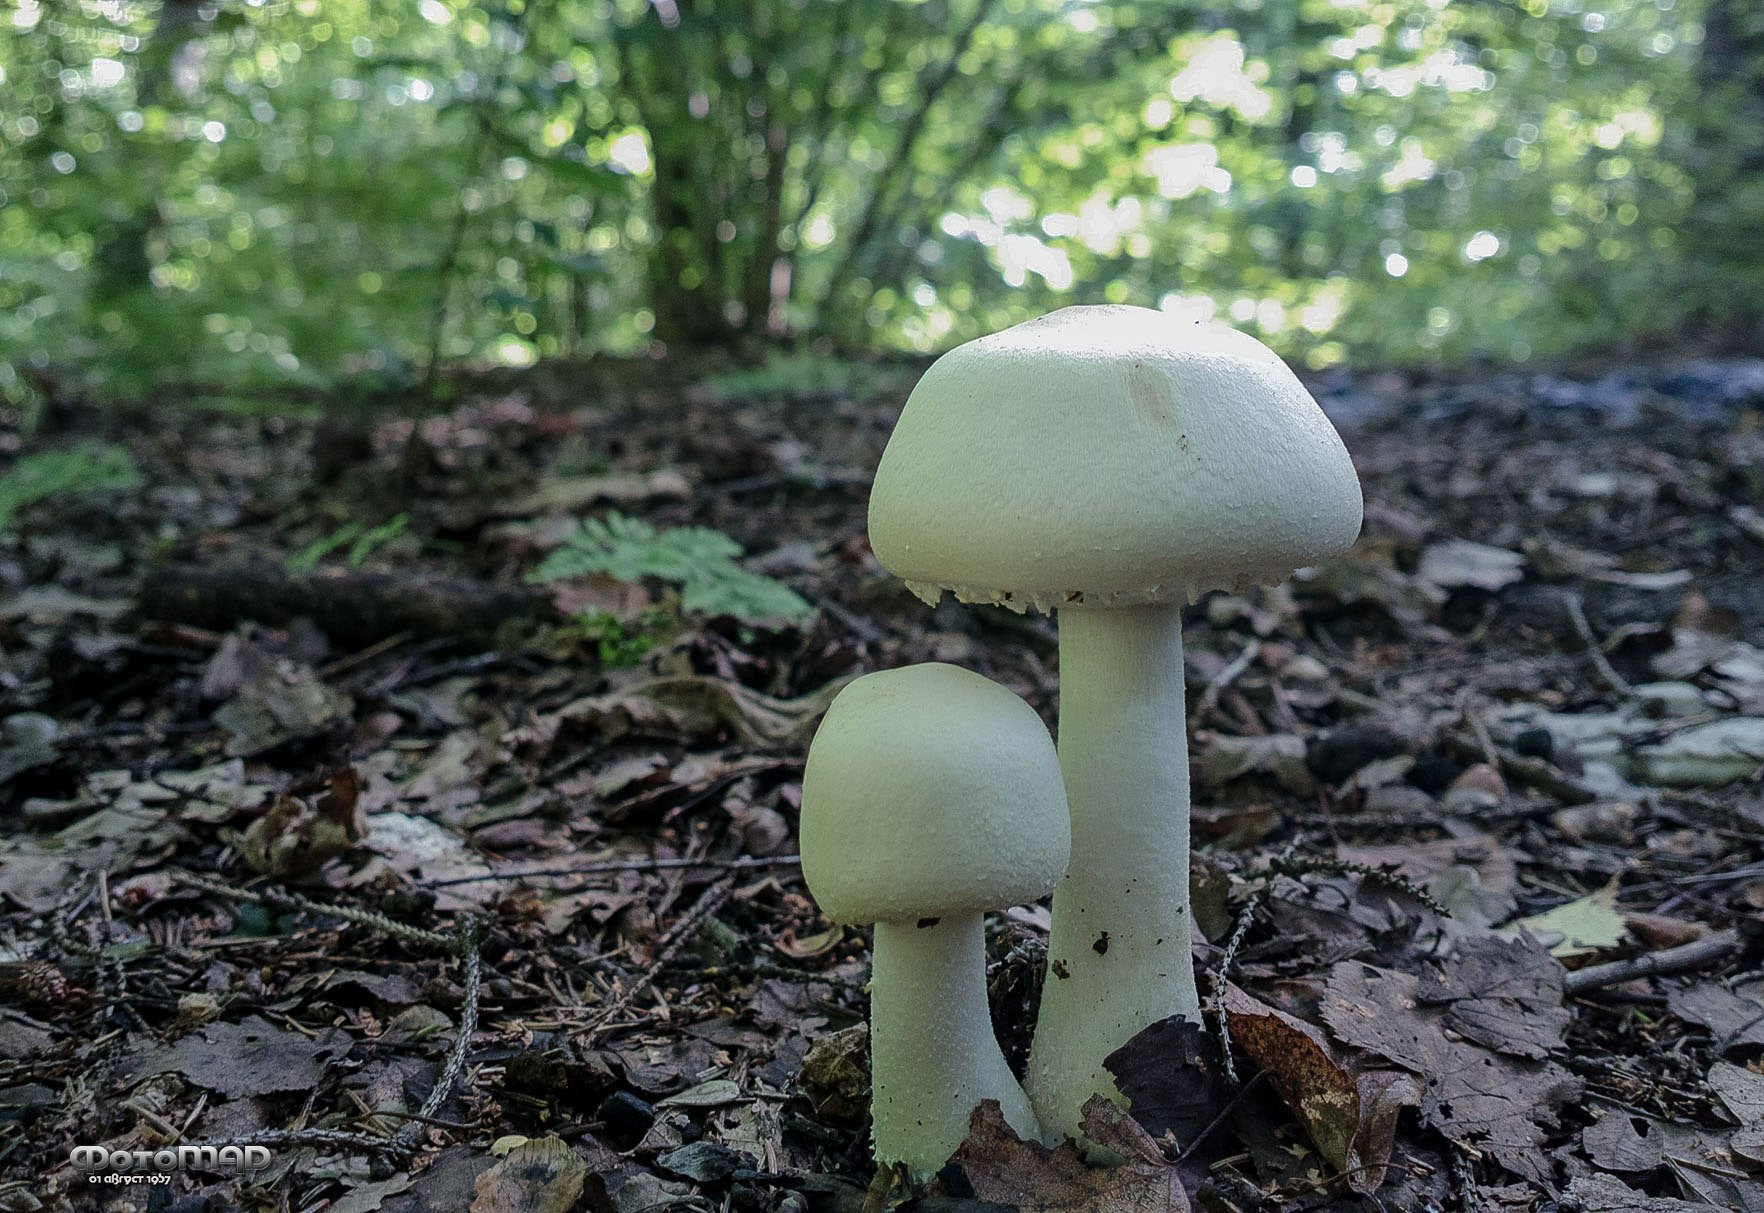 ***грибы белый гриб лес поле горы роща природа грибочки красота грибной суп шемпики